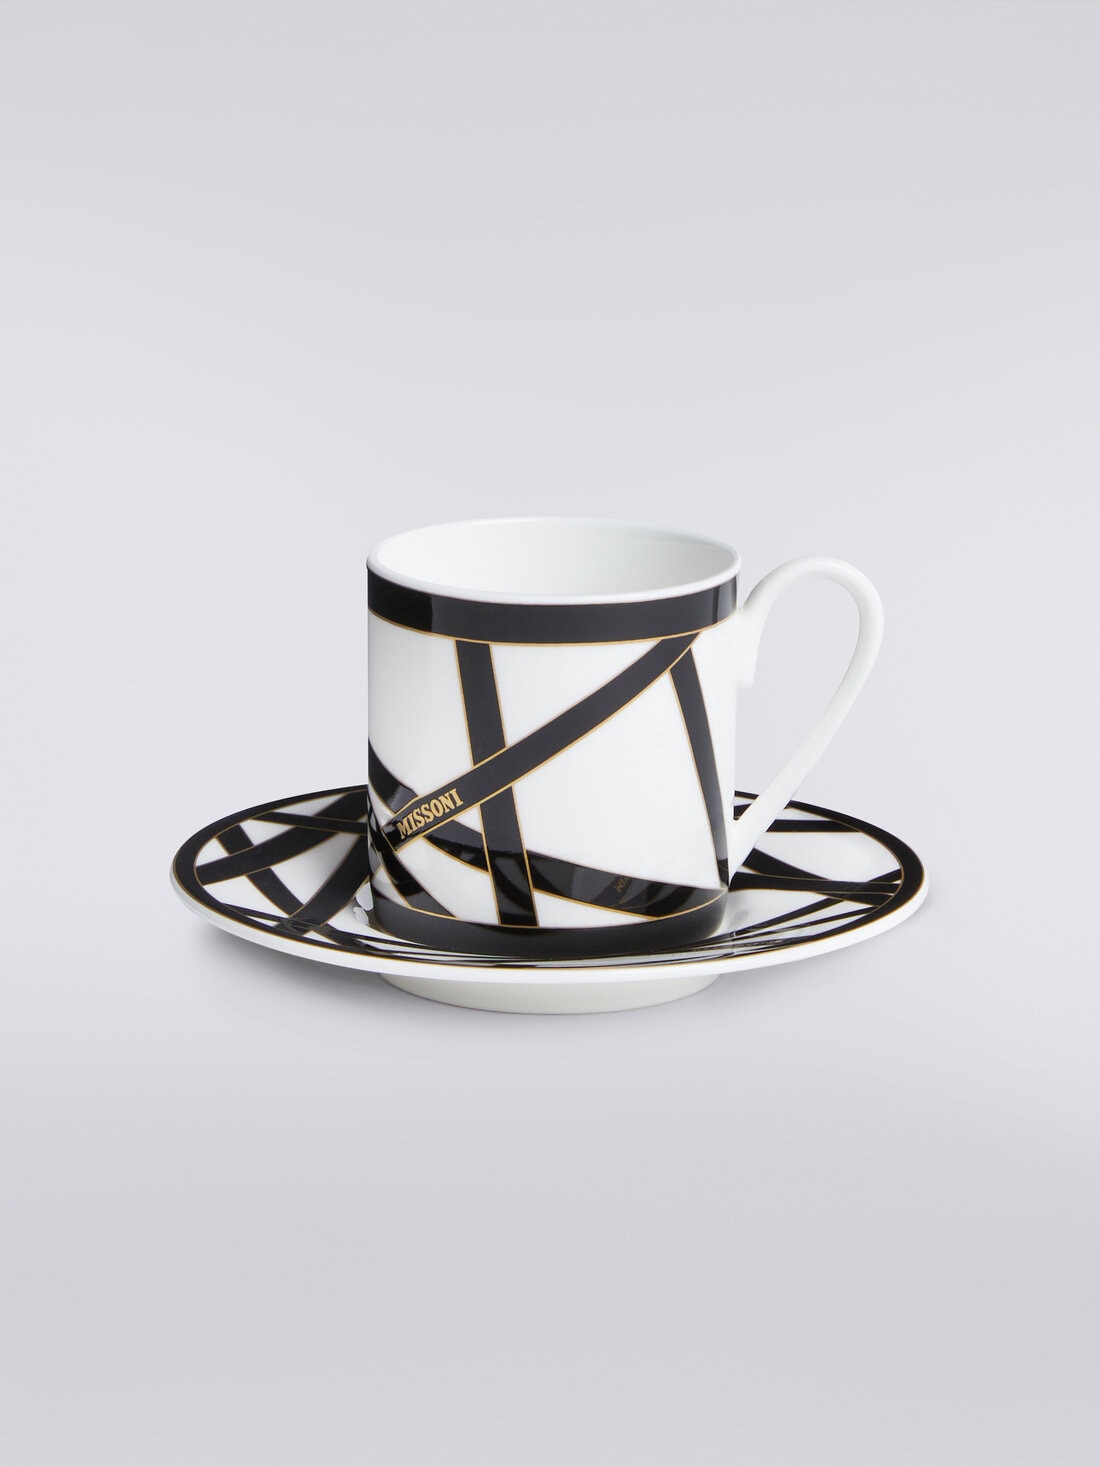 Missoni x Suonare Stella coffee cup and saucer set, Black & Multicoloured  - 8053147146485 - 0